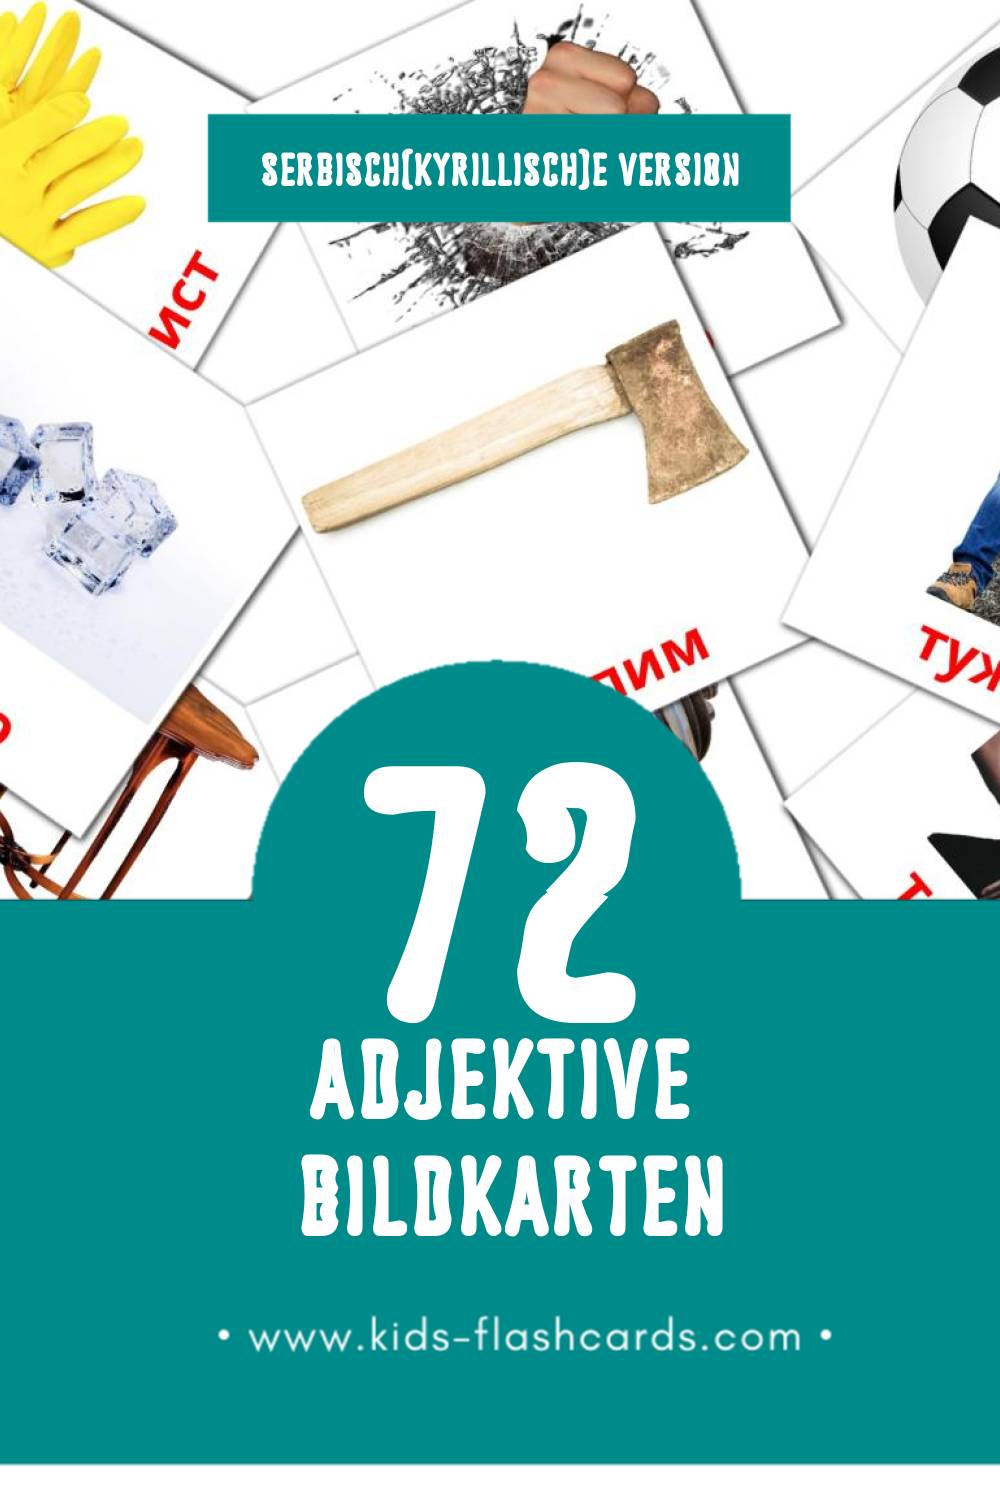 Visual придеви Flashcards für Kleinkinder (72 Karten in Serbisch(kyrillisch))